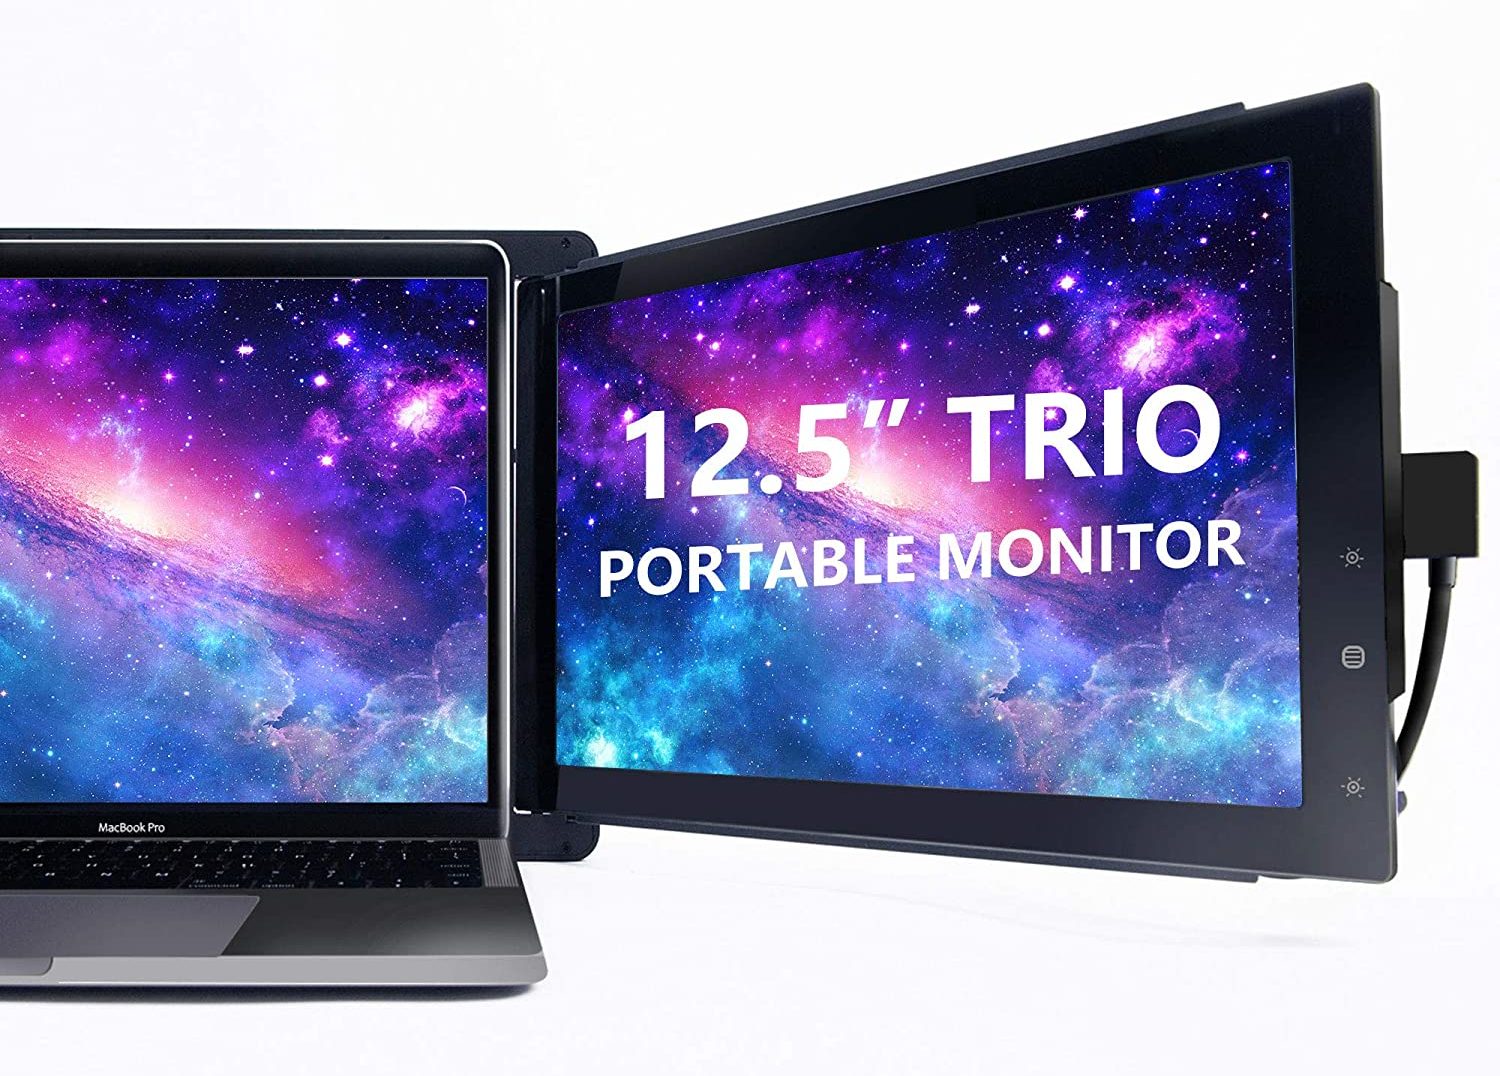 Trio portable monitor